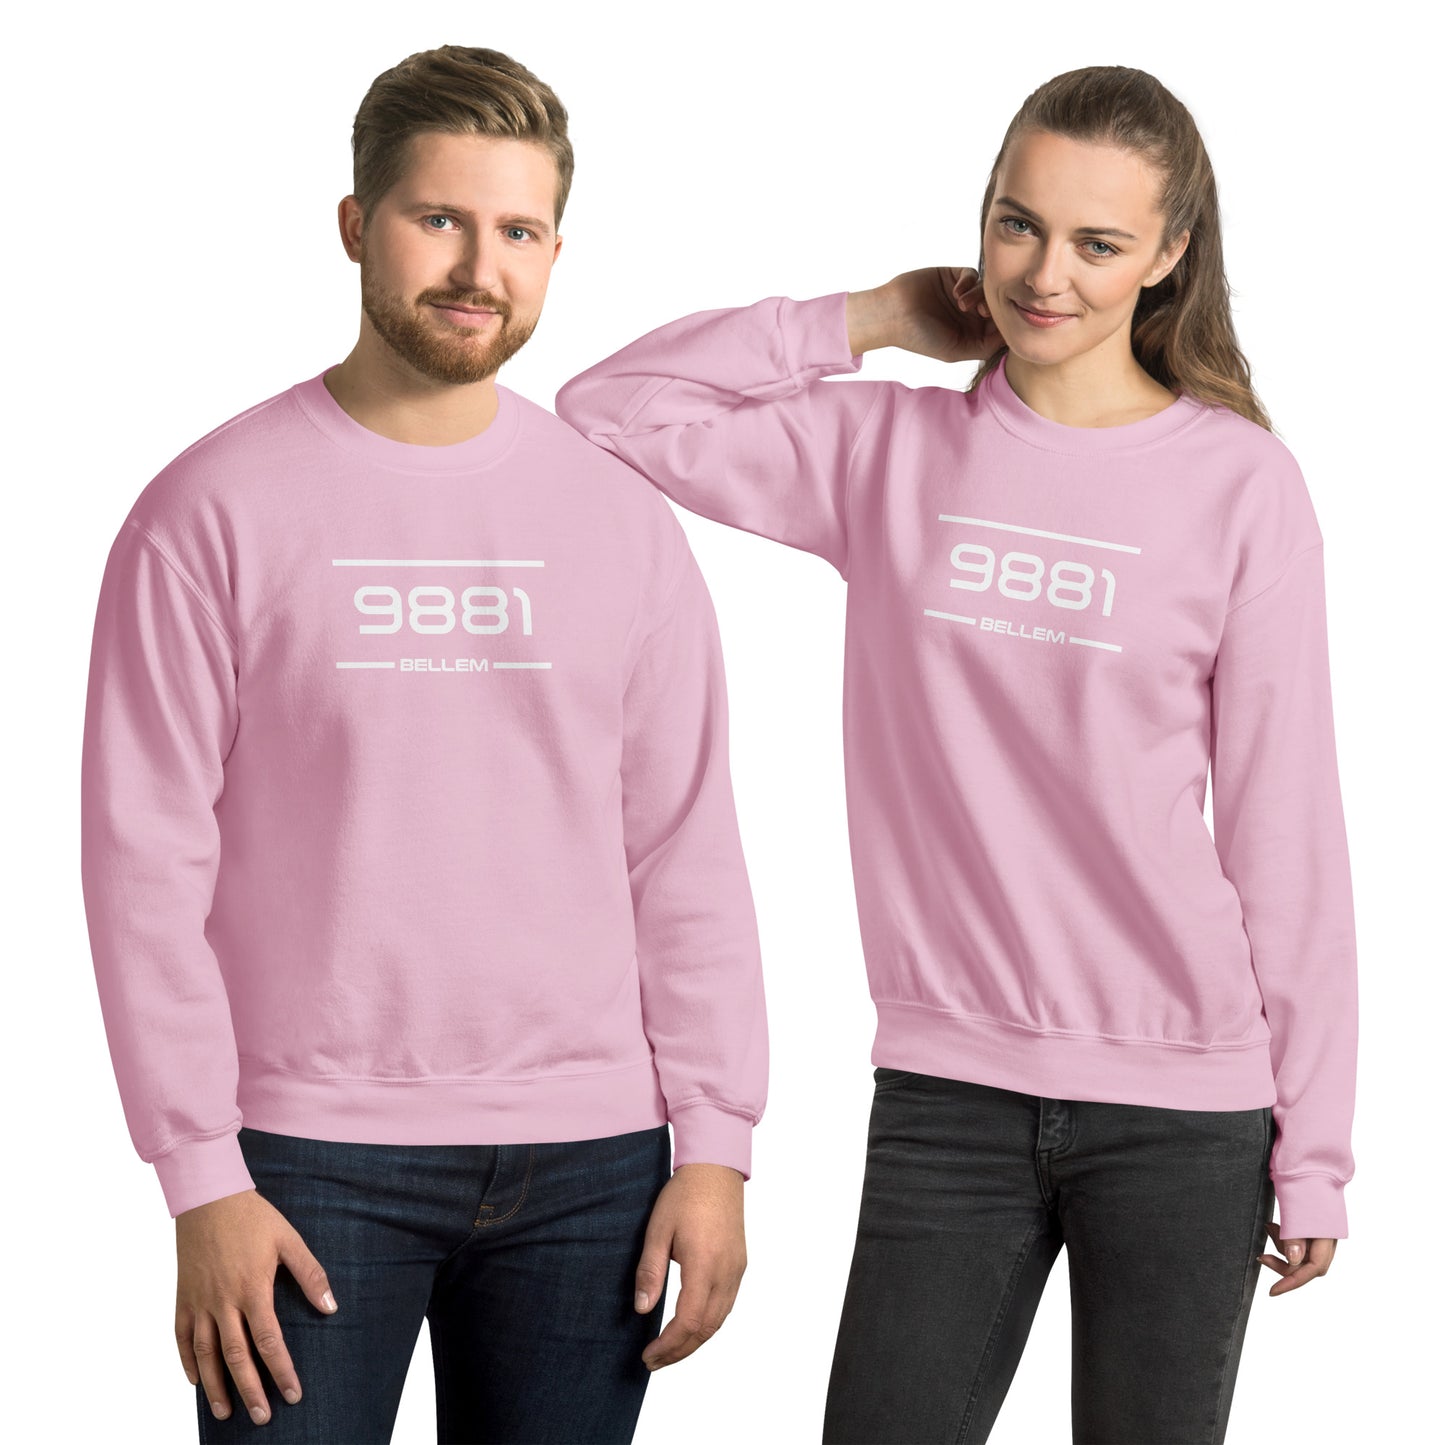 Sweater - 9881 - Bellem (M/V)